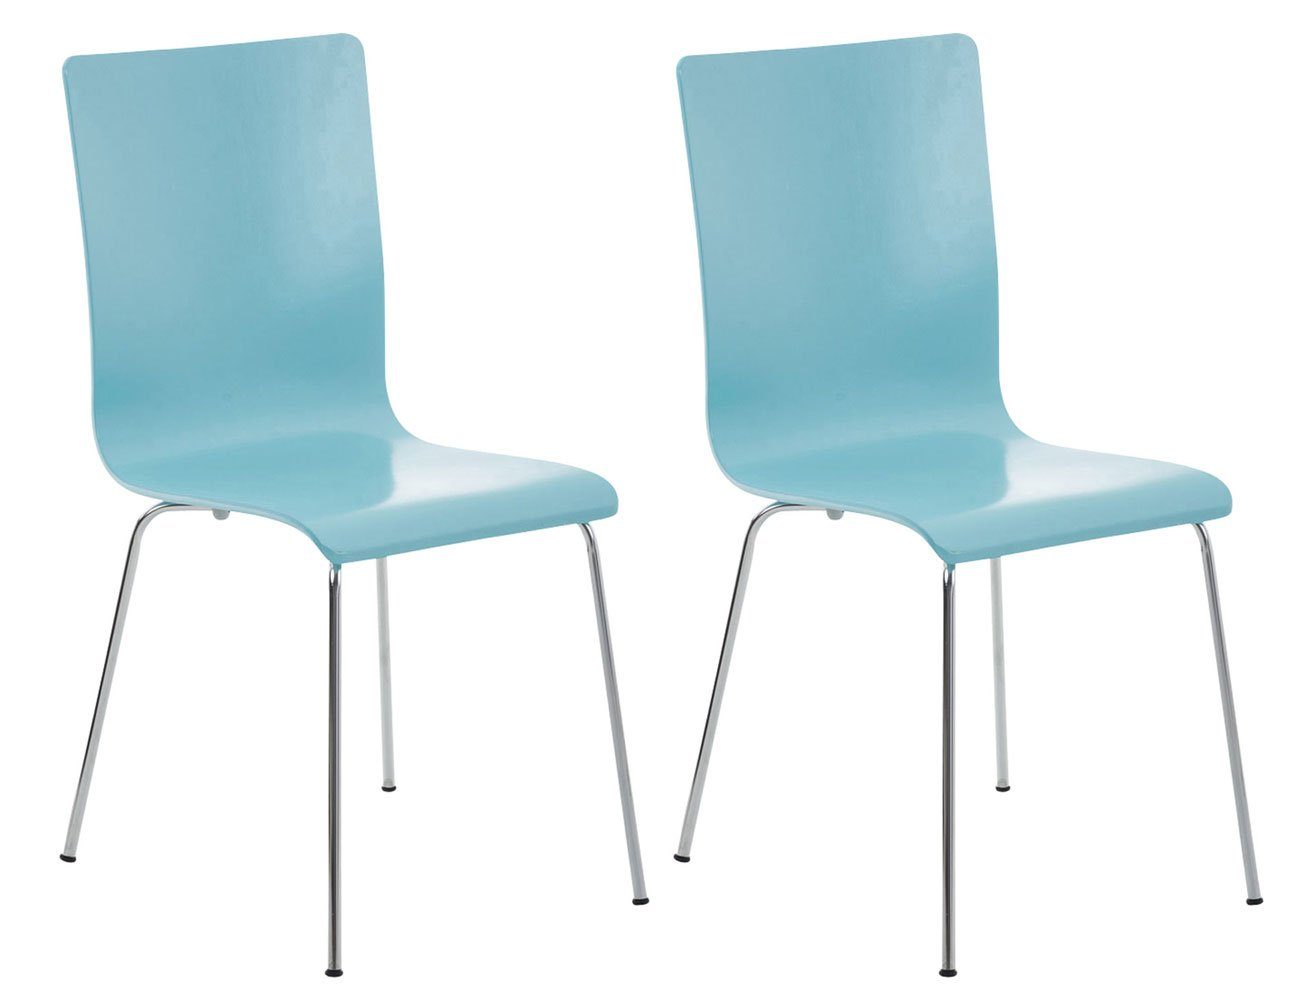 Sitzfläche: chrom - Sitzfläche 2 Messestuhl, - - Besucherstuhl - ergonomisch Warteraumstuhl Konferenzstuhl geformter mit St), hellblau Peppo Metall (Besprechungsstuhl Holz TPFLiving Gestell: